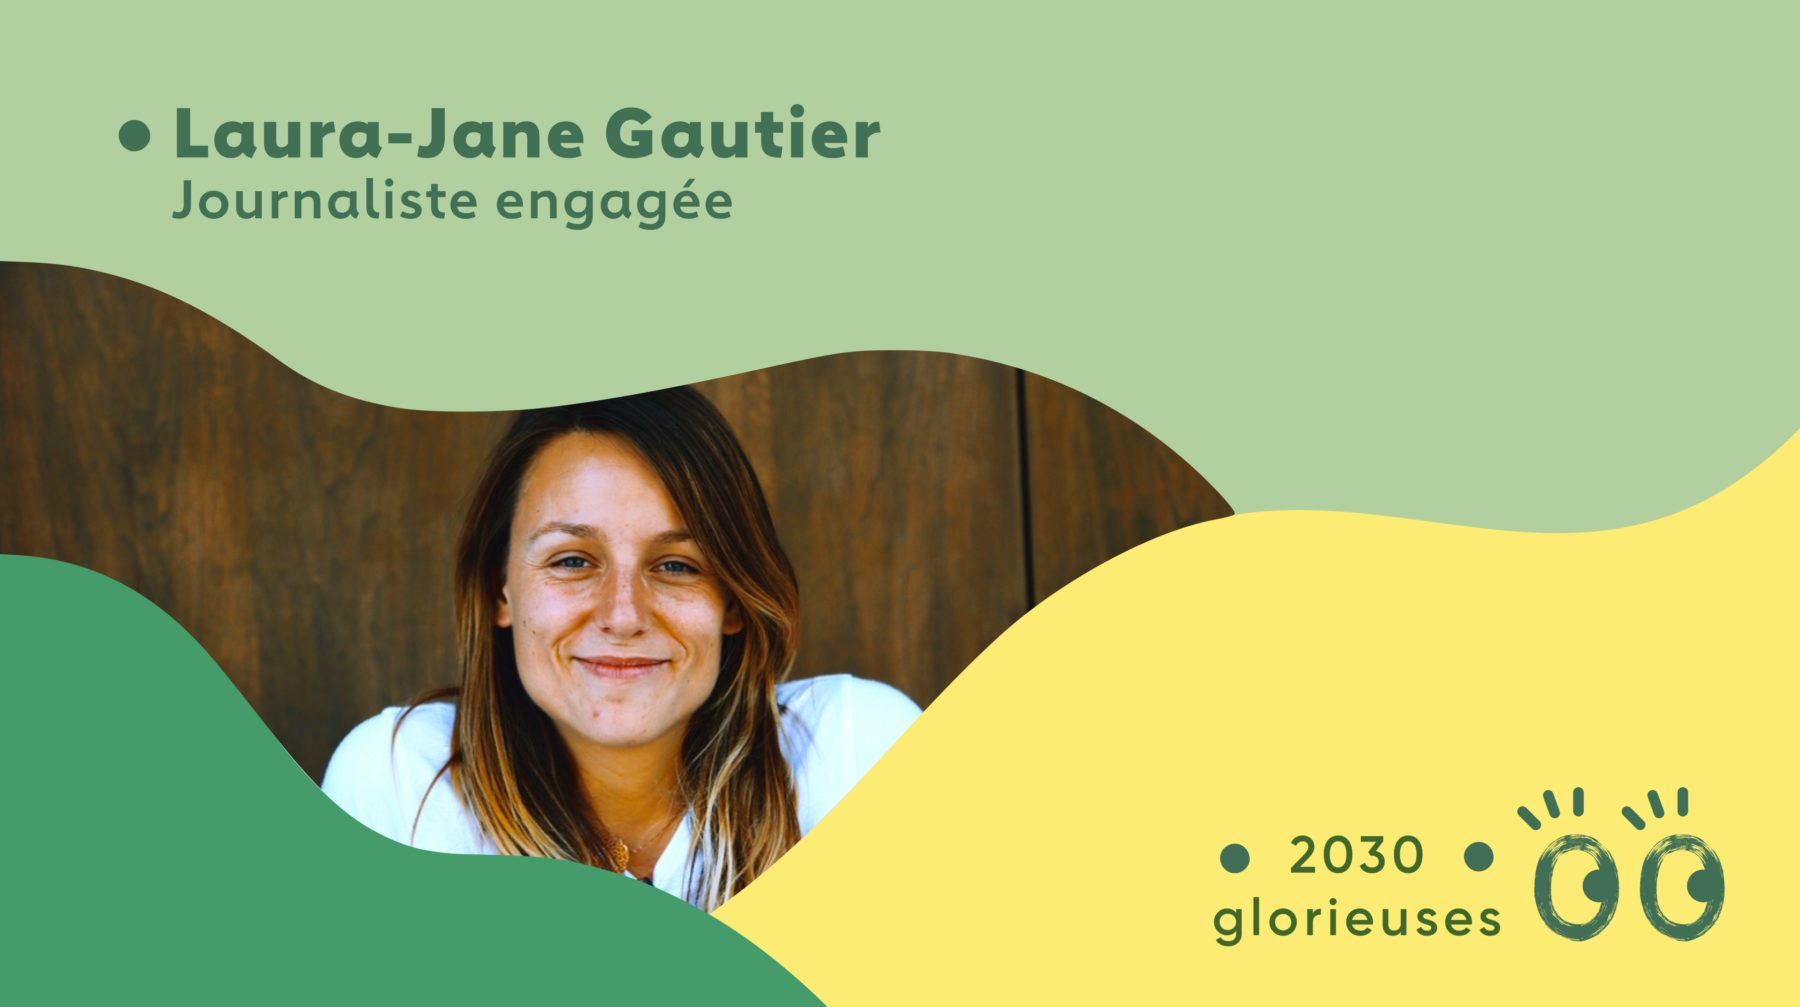 2030 Glorieuses #3: Laura-Jane Gautier